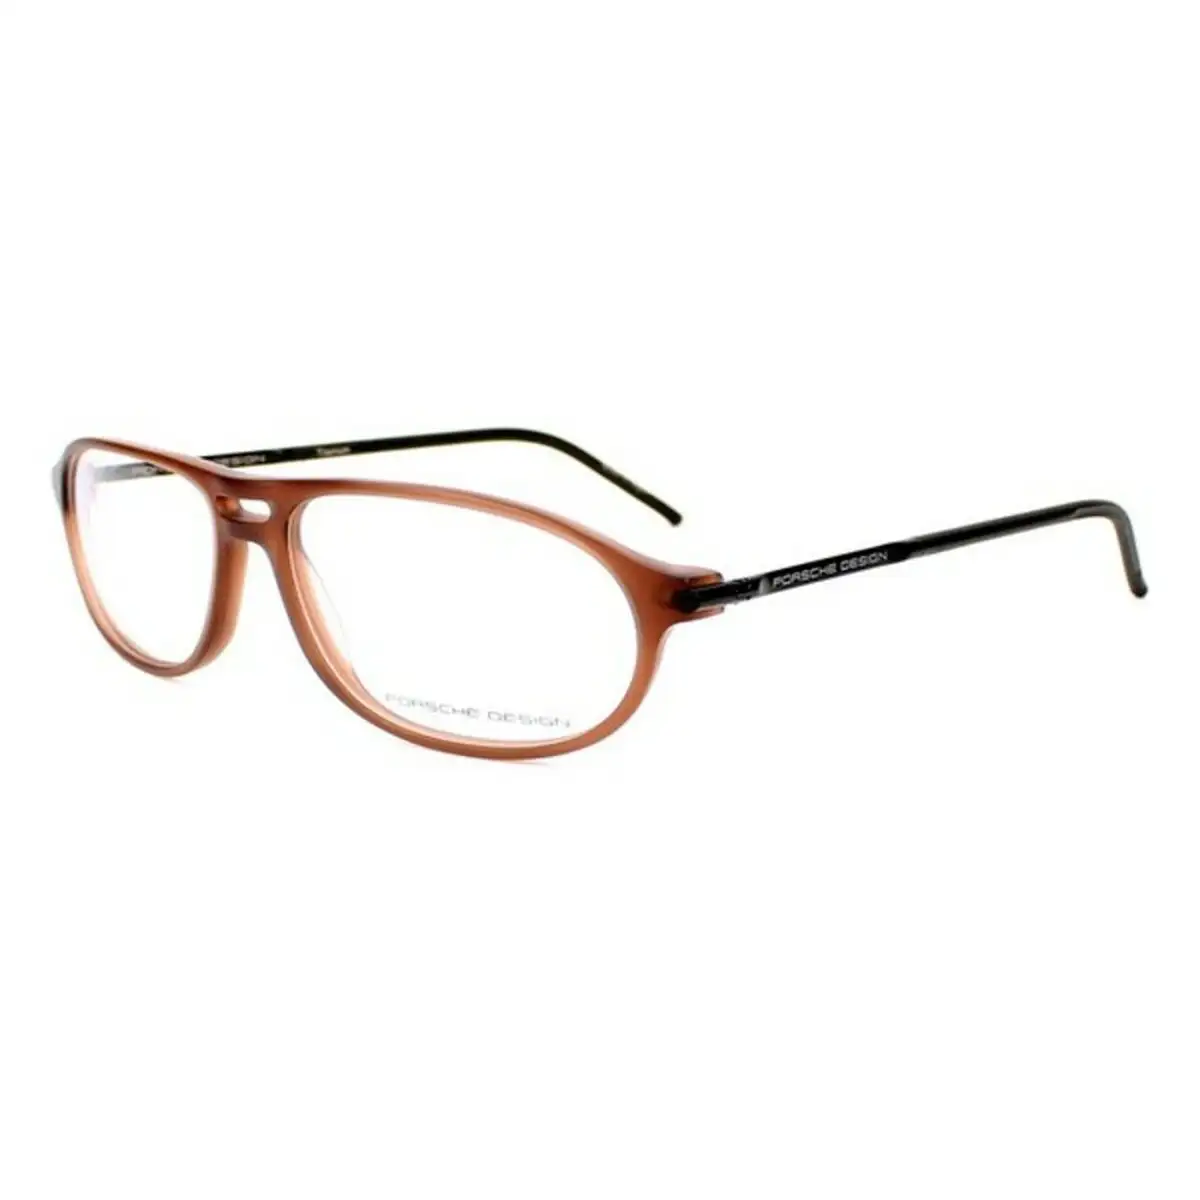 Monture de lunettes homme porsche p8138 b marron o 58 mm _1685. DIAYTAR SENEGAL - Où le Shopping est un Plaisir Engagé. Parcourez notre catalogue et choisissez des produits qui respectent vos valeurs et vos attentes.